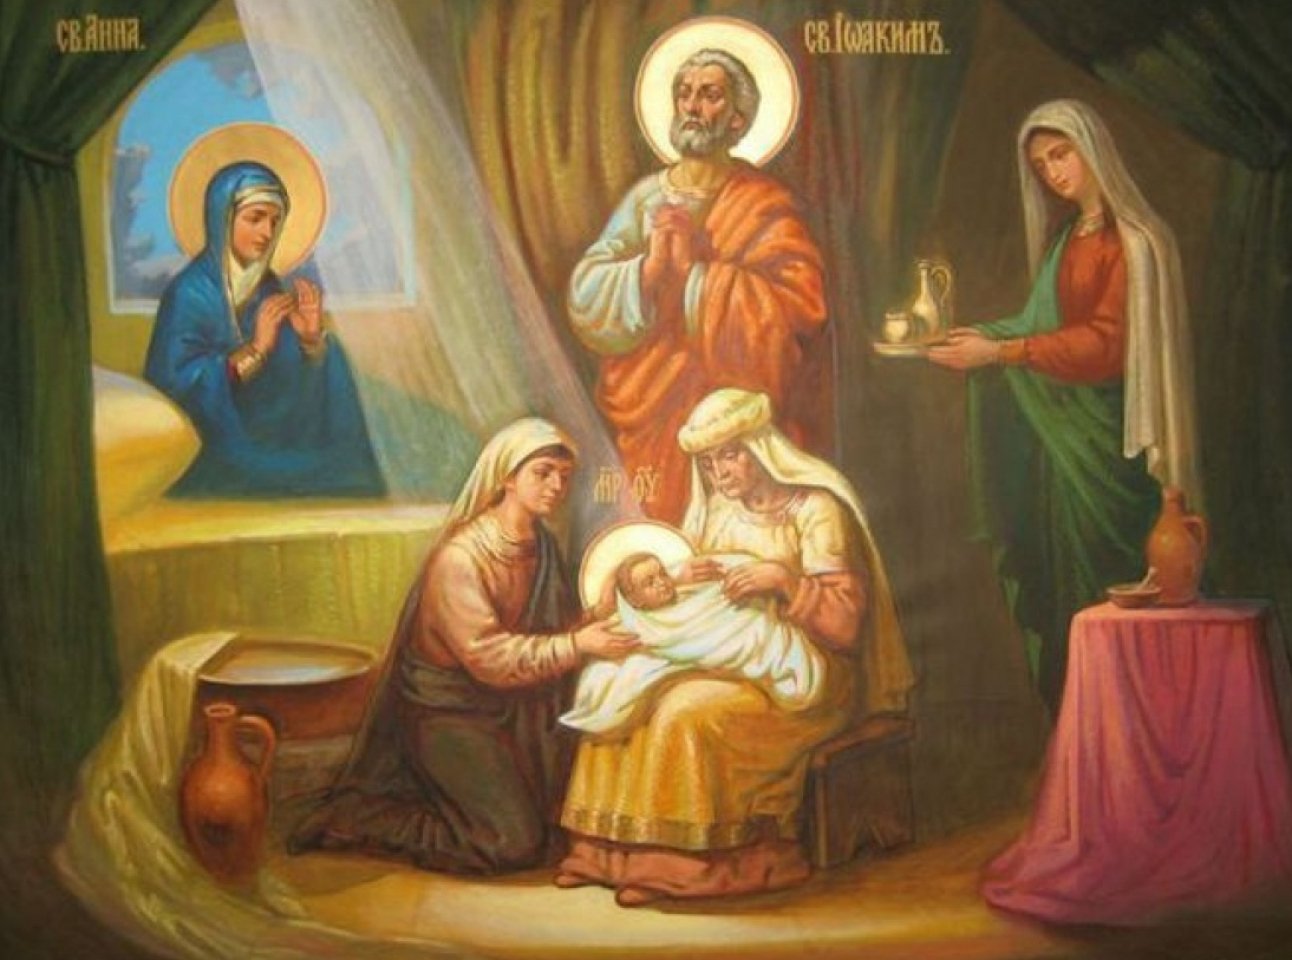 Православное рождество богородицы